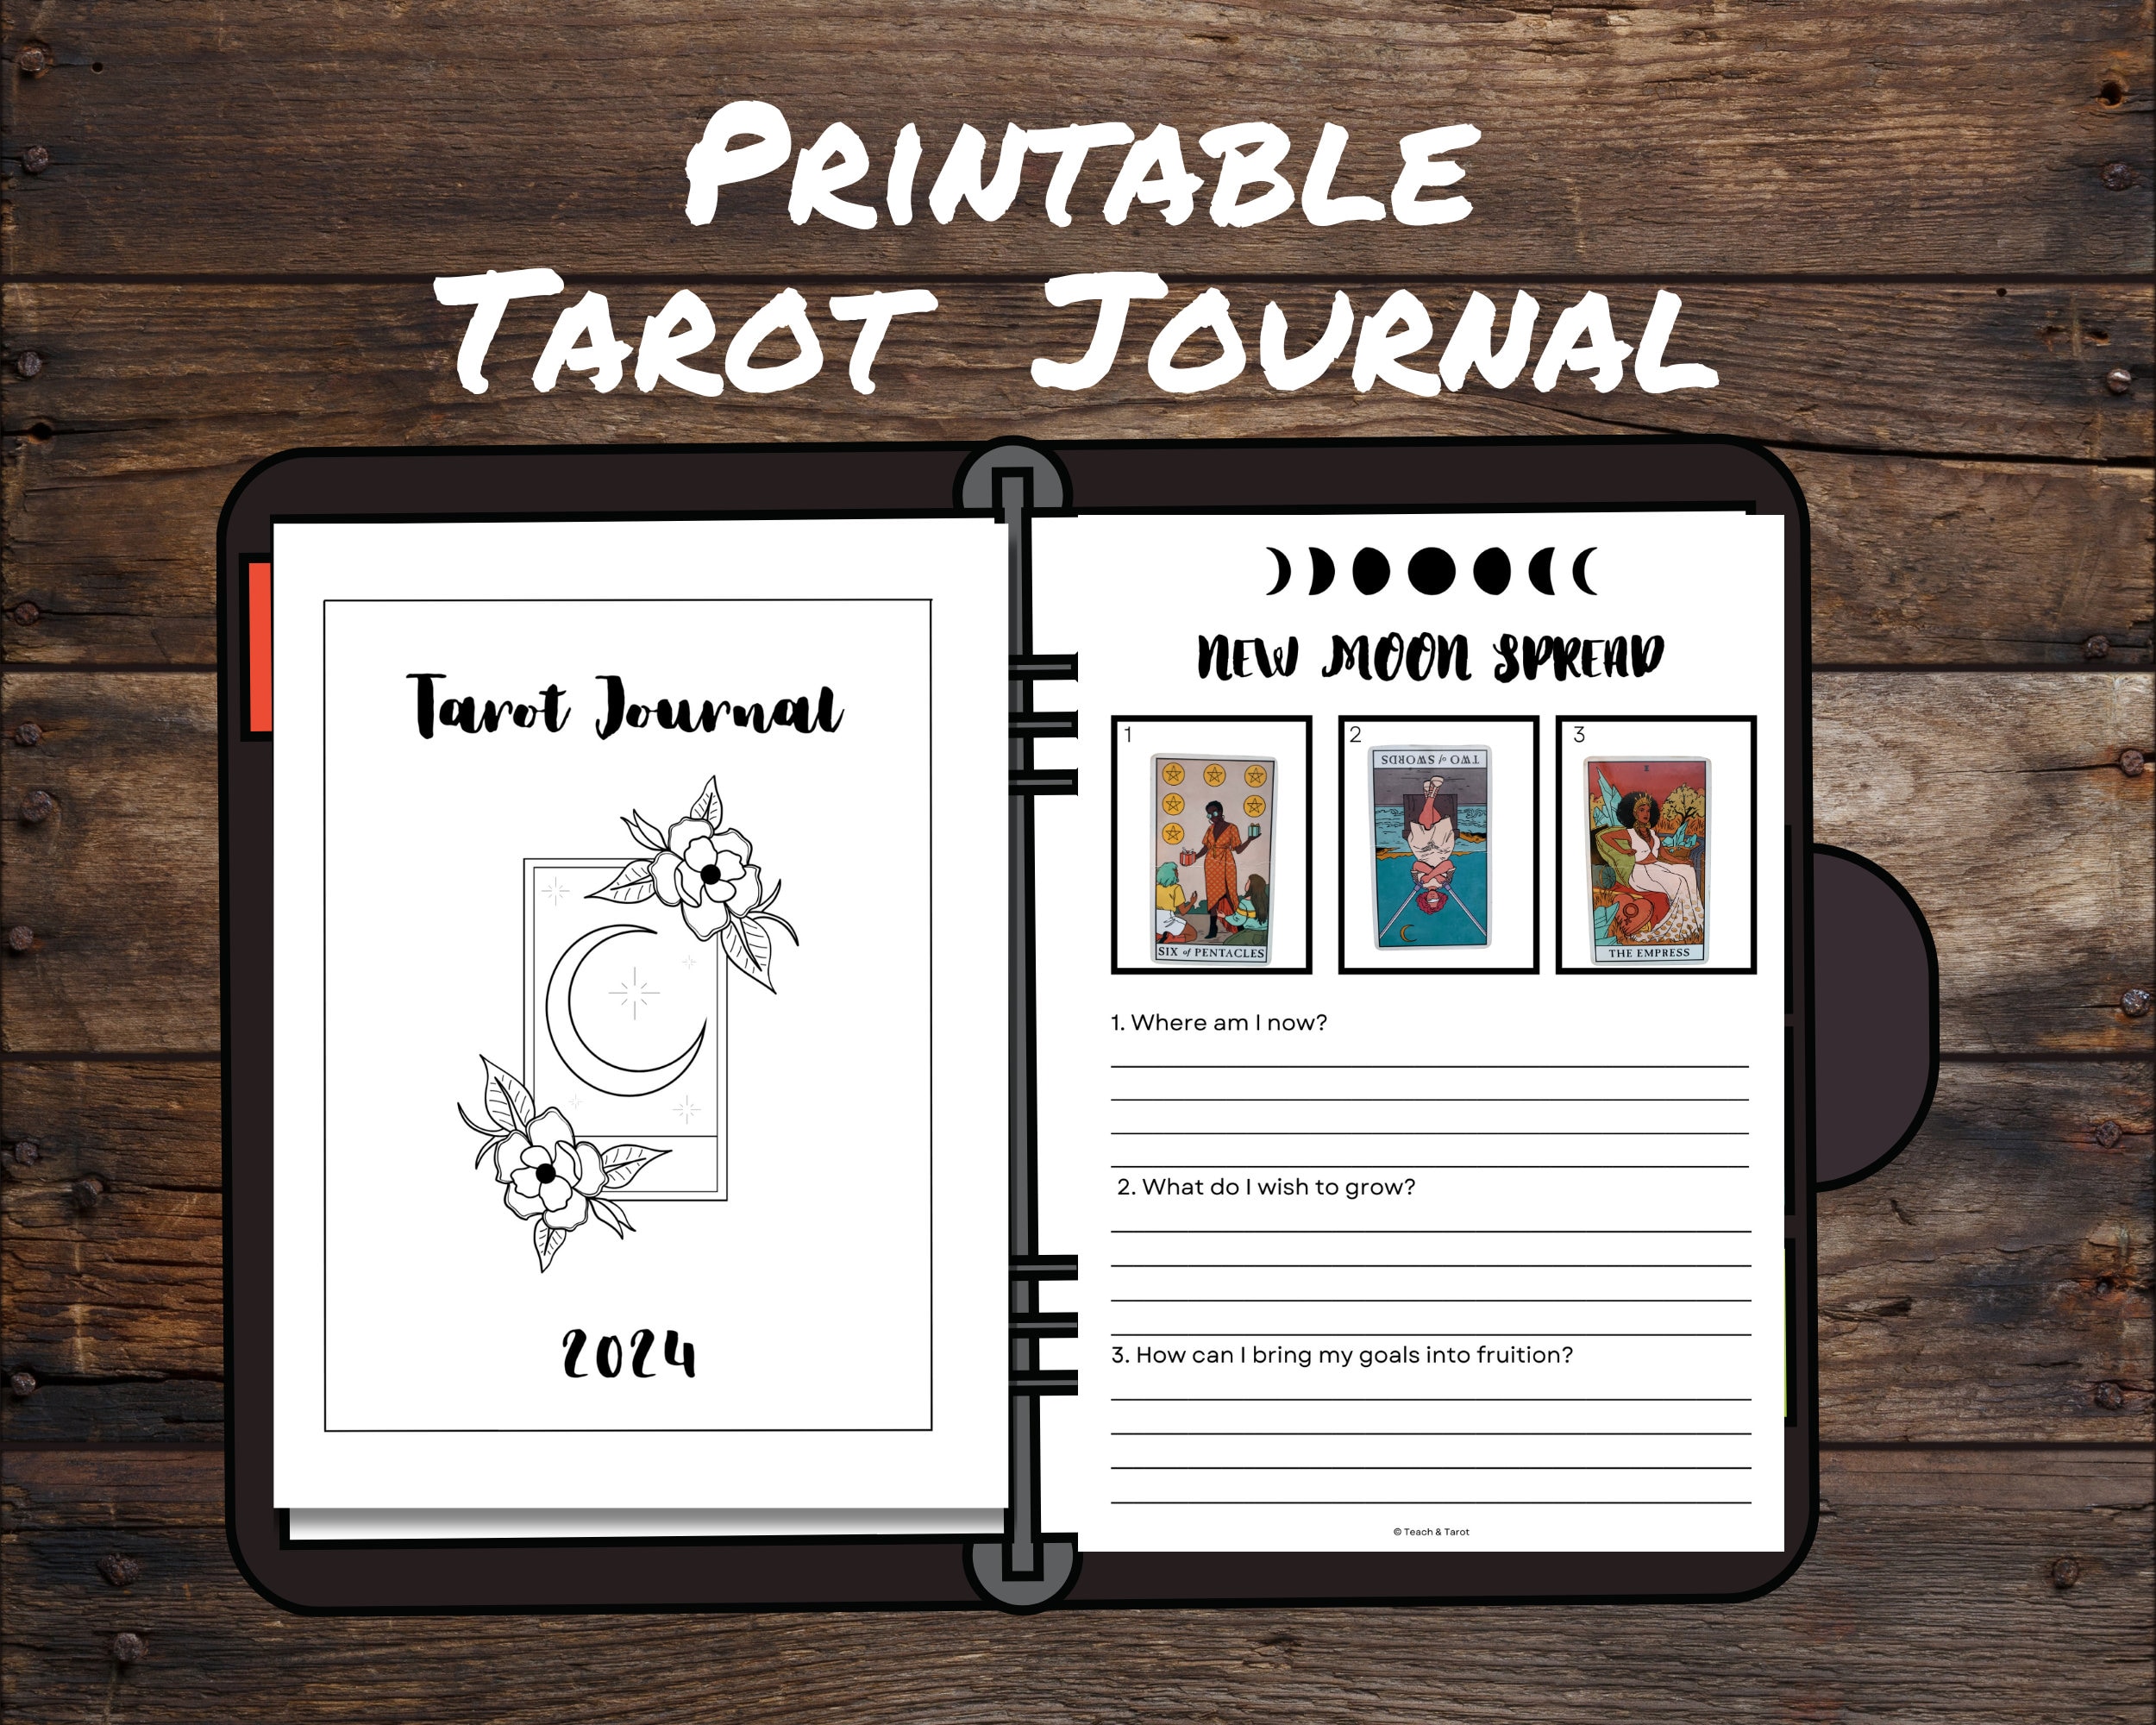 Tarot Journal 2024 | Printable Tarot Journal | Tarot Calendar Pages | Tarot  Planner | DIY Tarot Journal Binder | B &W | US Letter, A4, A5